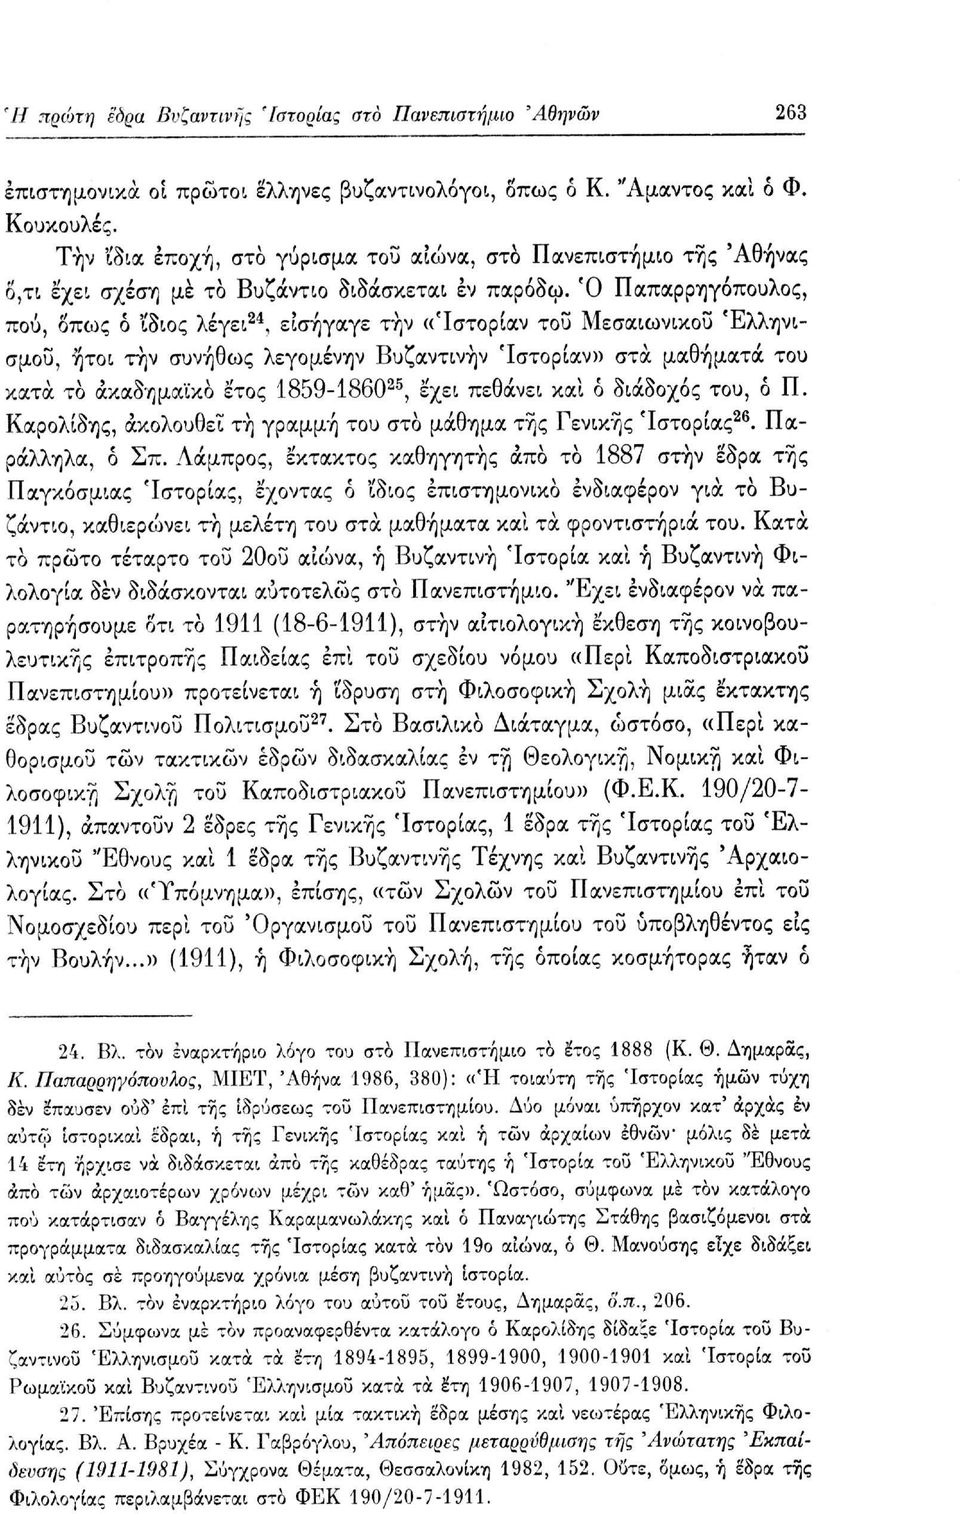 Ό Παπαρρηγόπουλος, πού, όπως δ ίδιος λέγει 24, εισήγαγε την «Ίστορίαν του Μεσαιωνικού Ελληνισμού, ήτοι την συνήθως λεγομένην Βυζαντινήν Ίστορίαν» στα μαθήματα του κατά το ακαδημαϊκό έτος 1859-1860